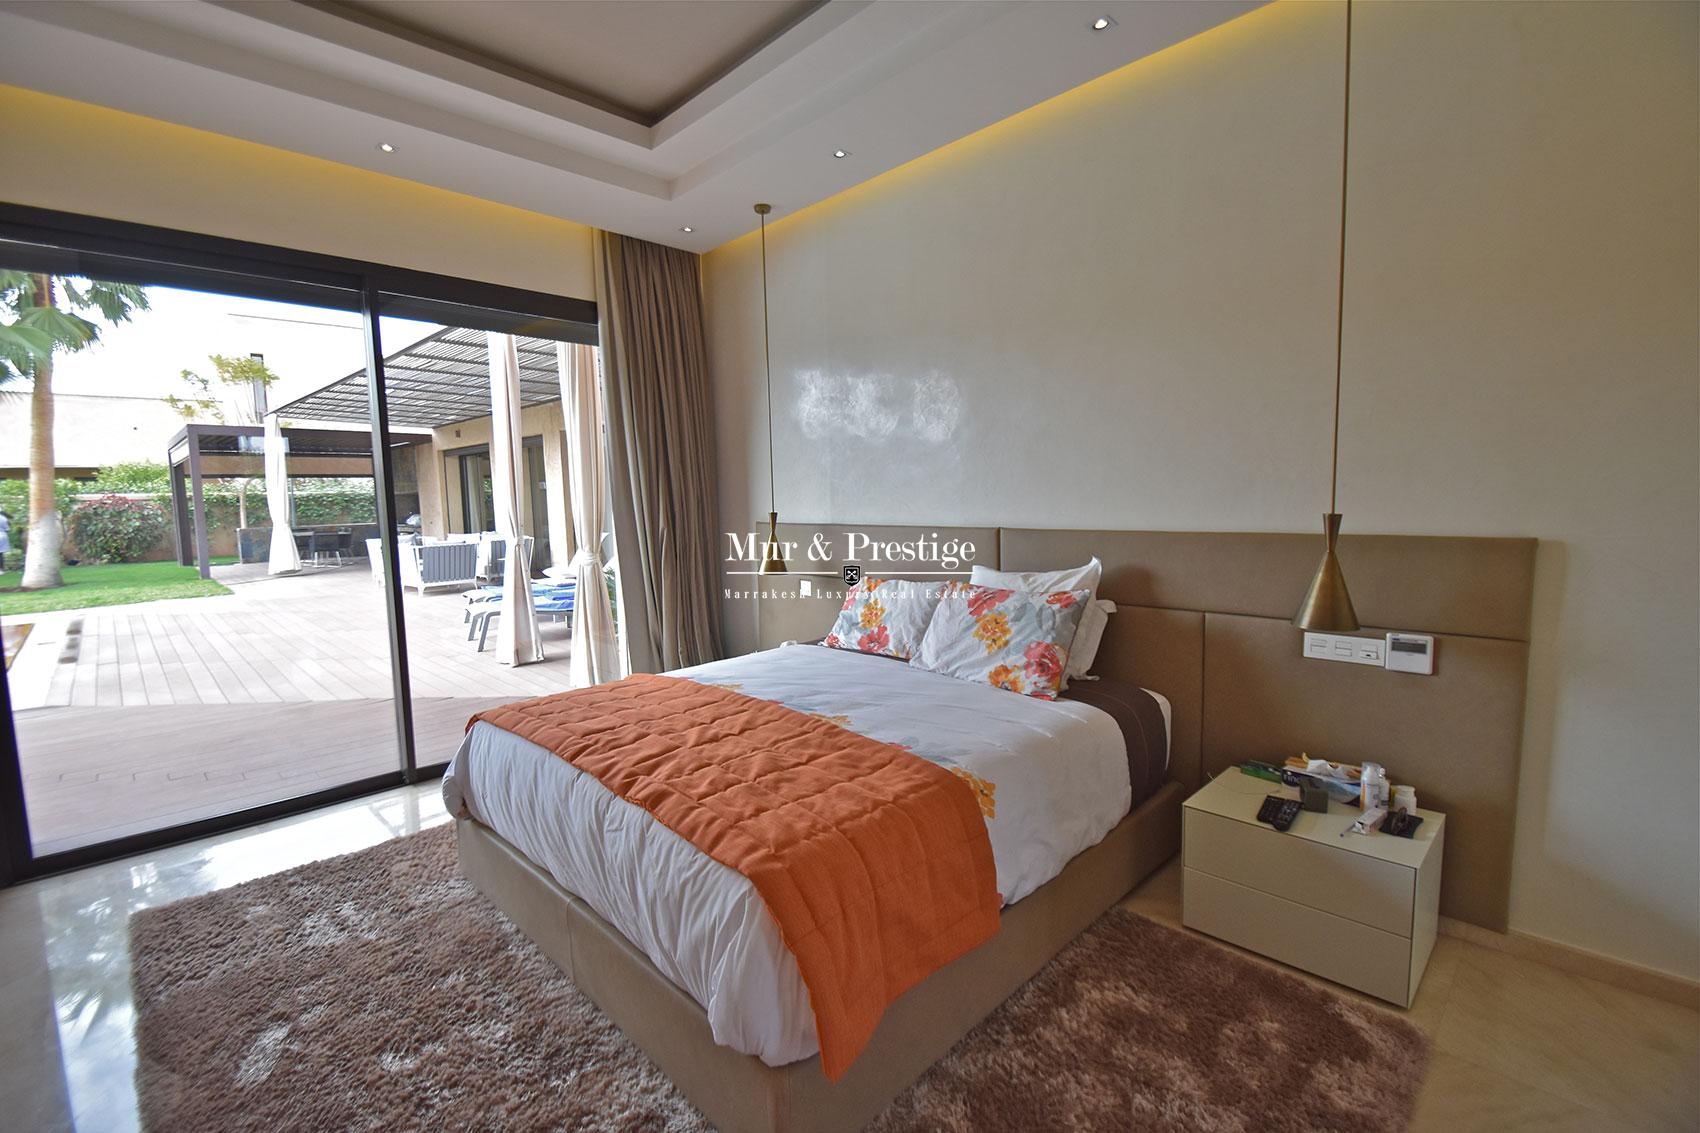 Villa de luxe moderne en vente Marrakech 